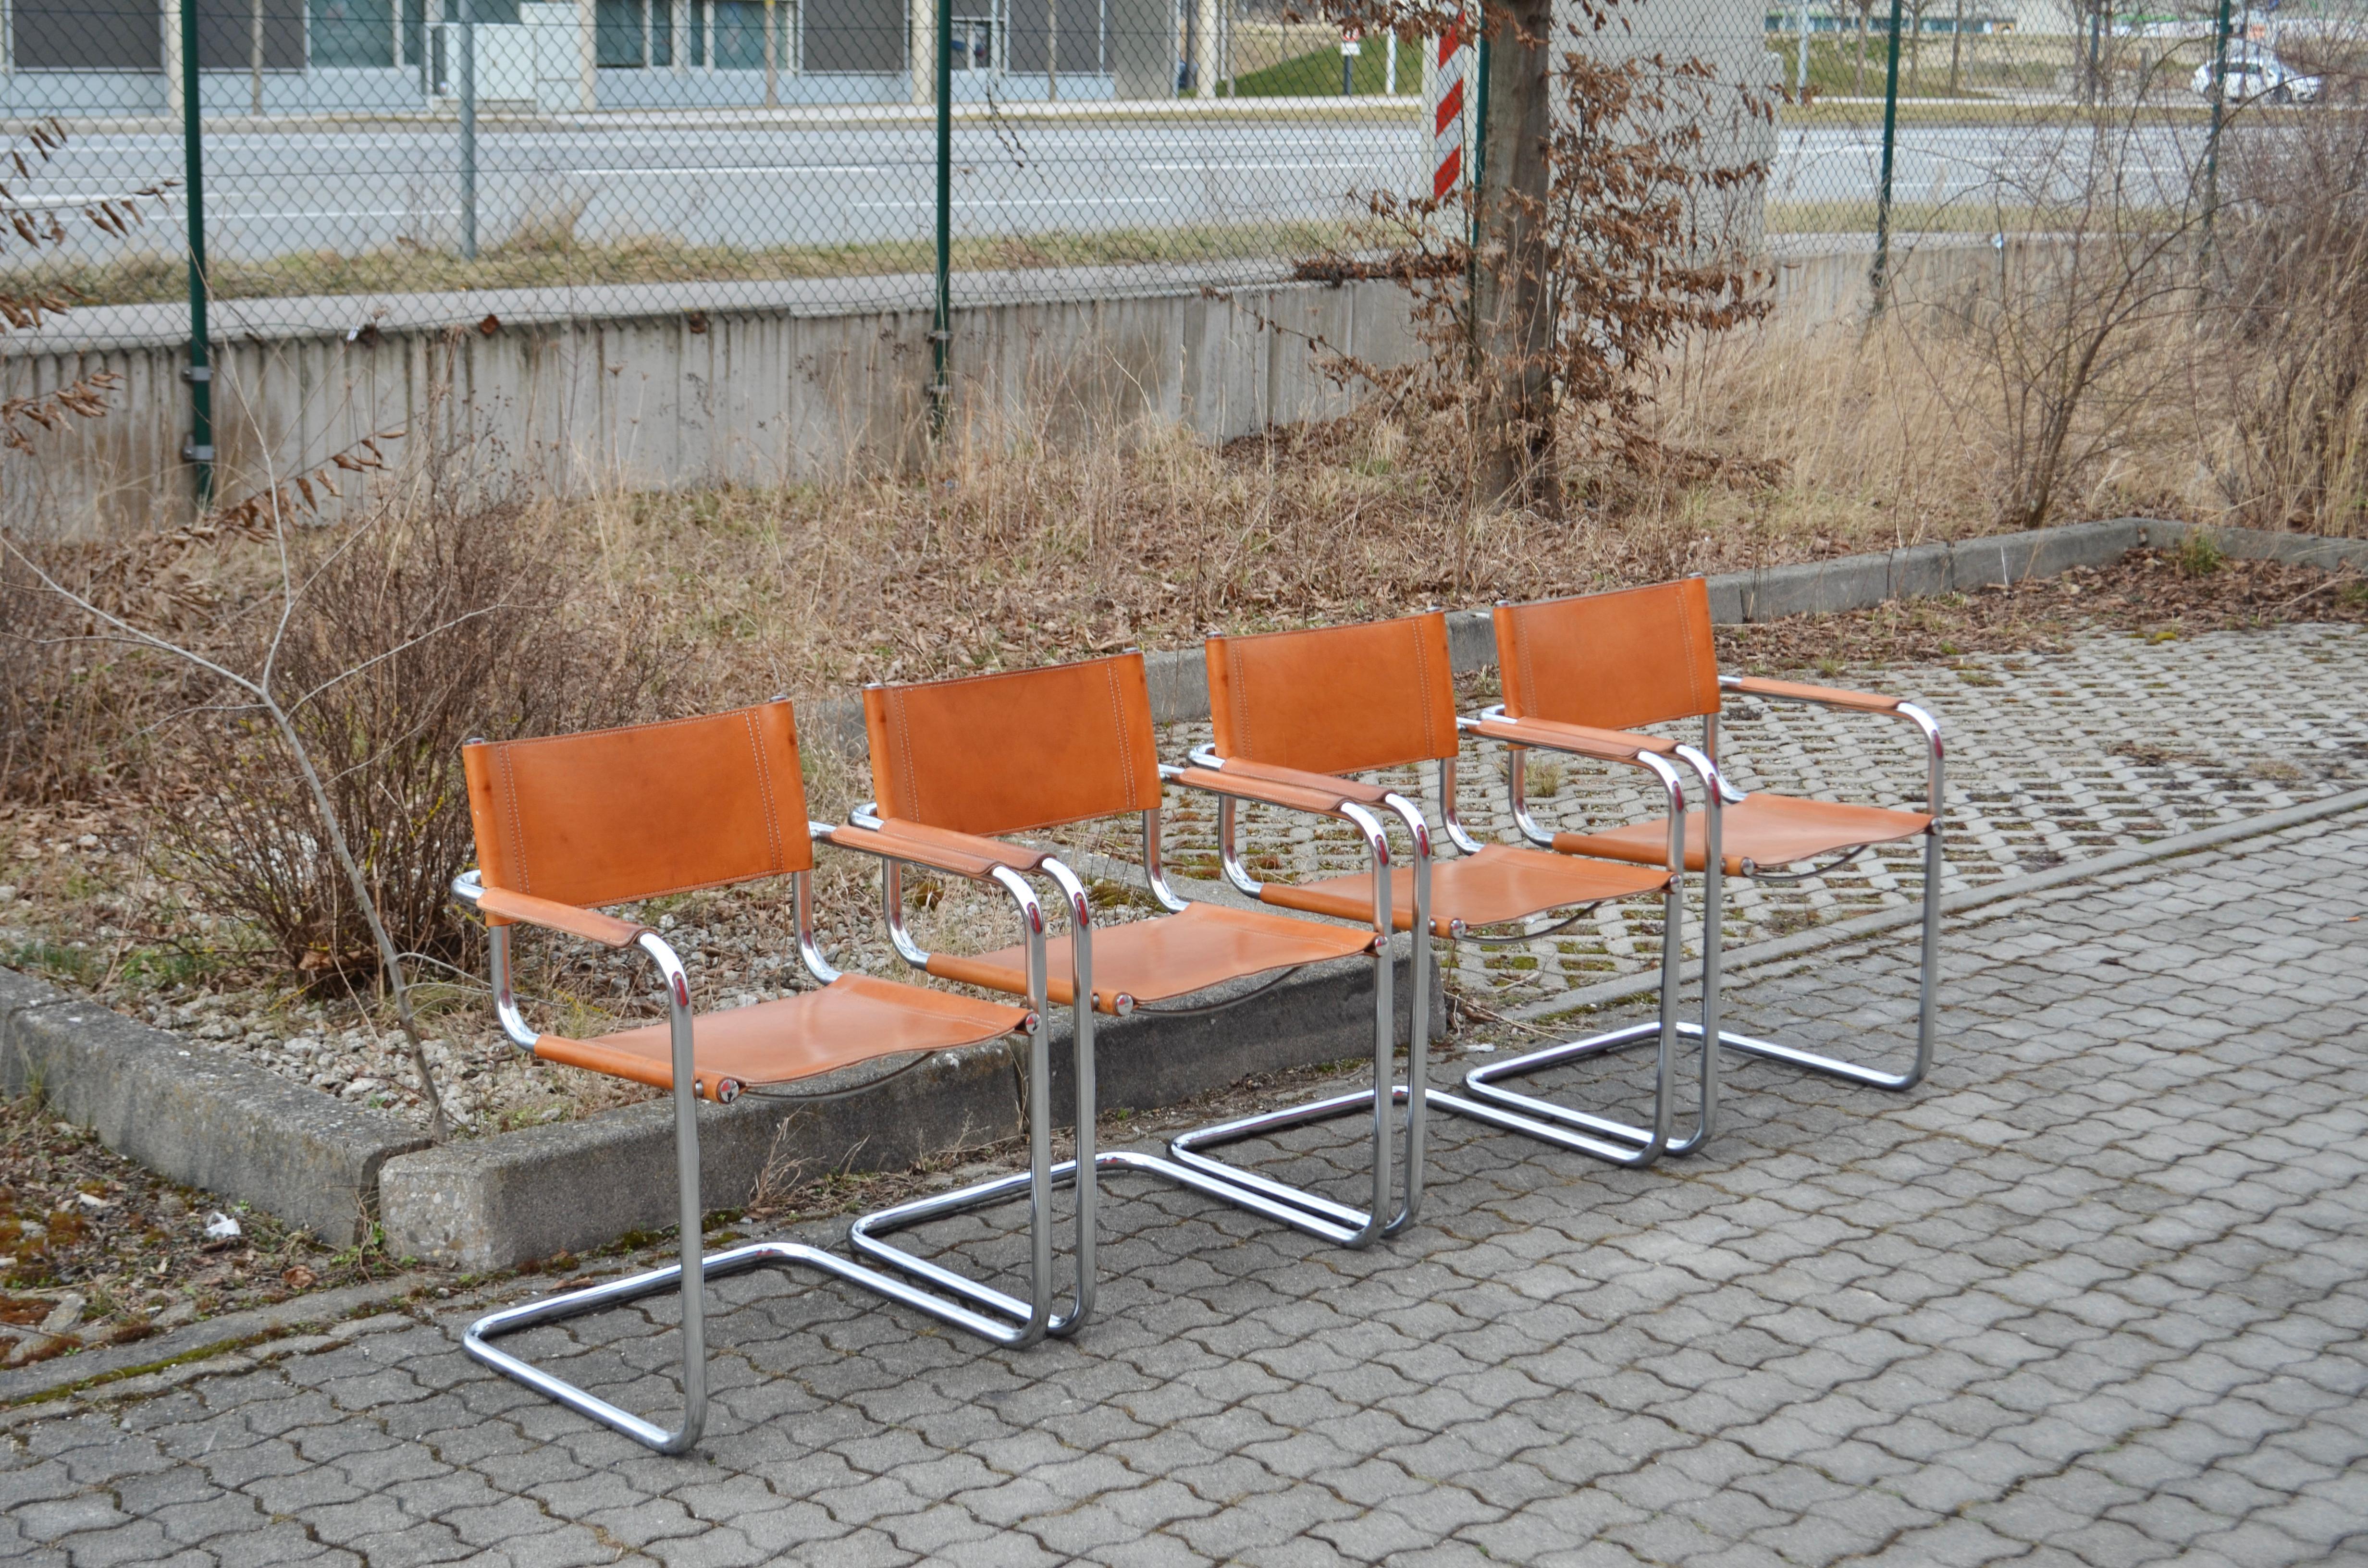 Ces chaises Cantilever vintage sont des classiques italiens.
À la manière de Marcel Breuer, ces chaises sont fortement inspirées du mouvement Bauhaus.
Le cuir épais de la selle, tanné végétal, a développé avec les années une magnifique patine